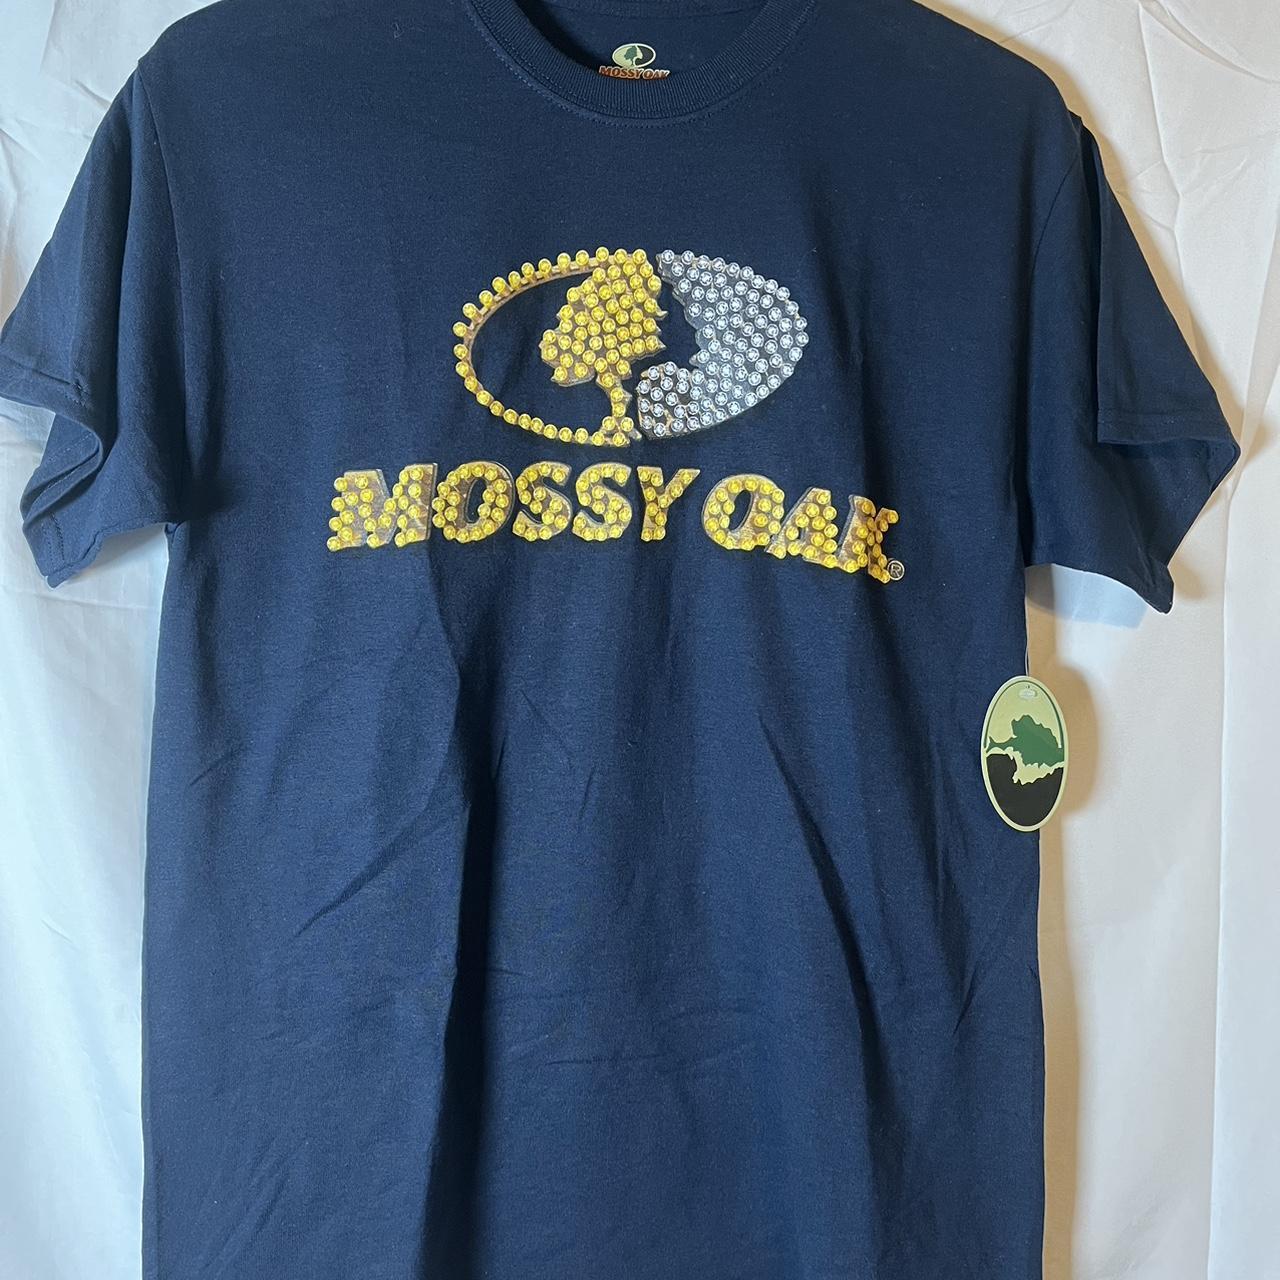 mossy oak t nice blue with chrome #mossyoak - Depop